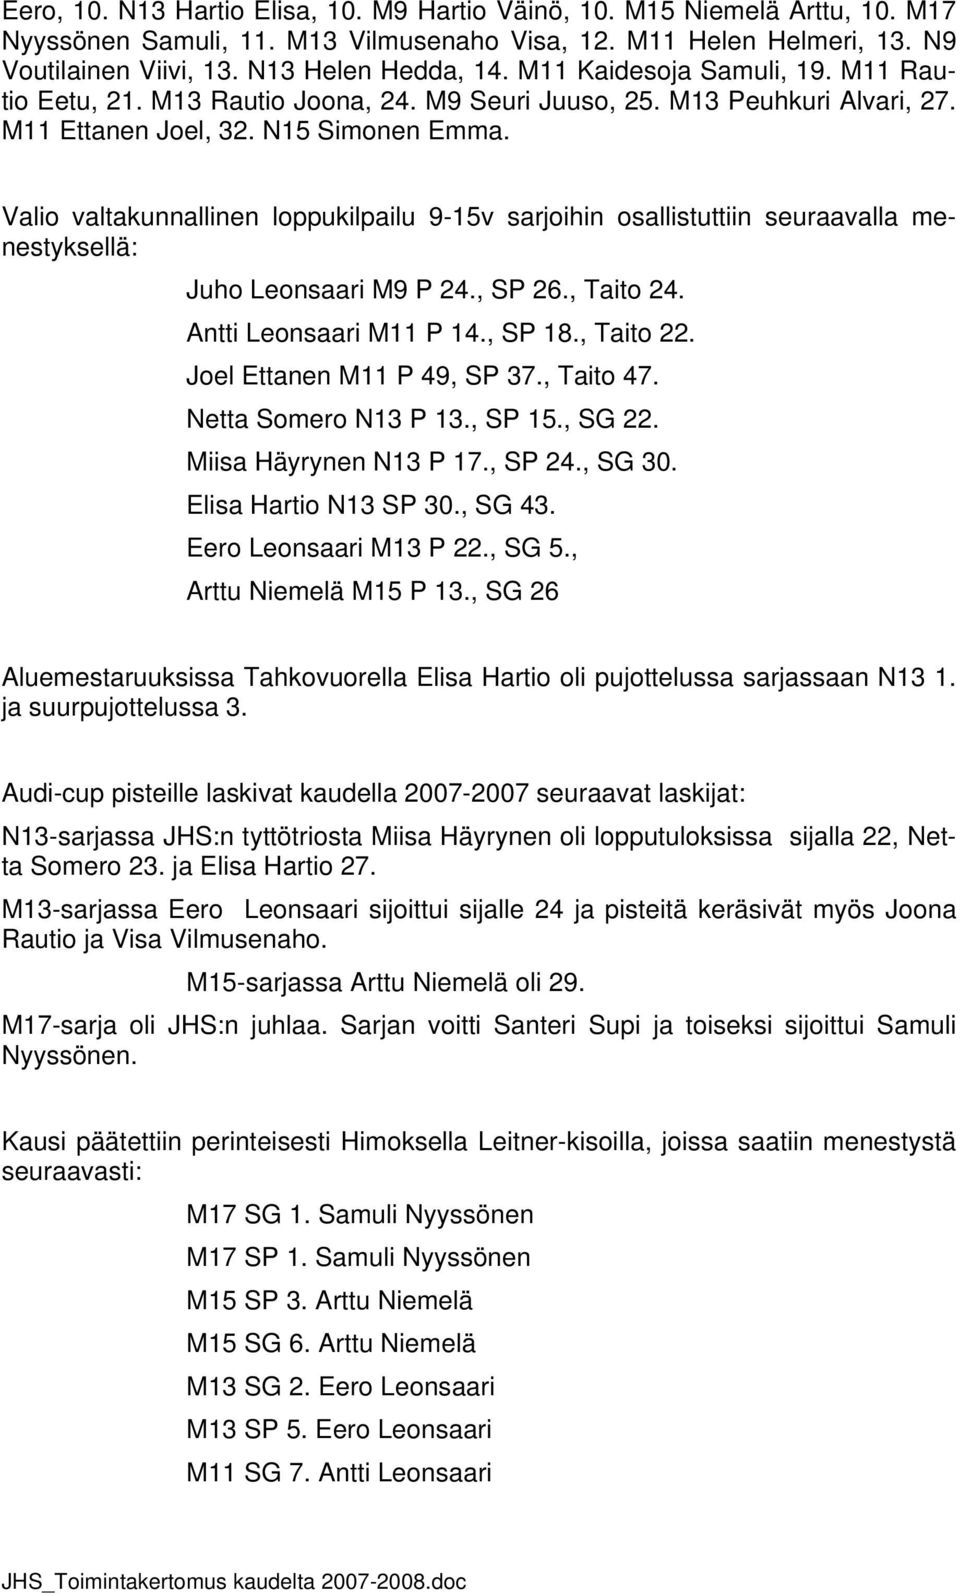 Valio valtakunnallinen loppukilpailu 9-15v sarjoihin osallistuttiin seuraavalla menestyksellä: Juho Leonsaari M9 P 24., SP 26., Taito 24. Antti Leonsaari M11 P 14., SP 18., Taito 22.